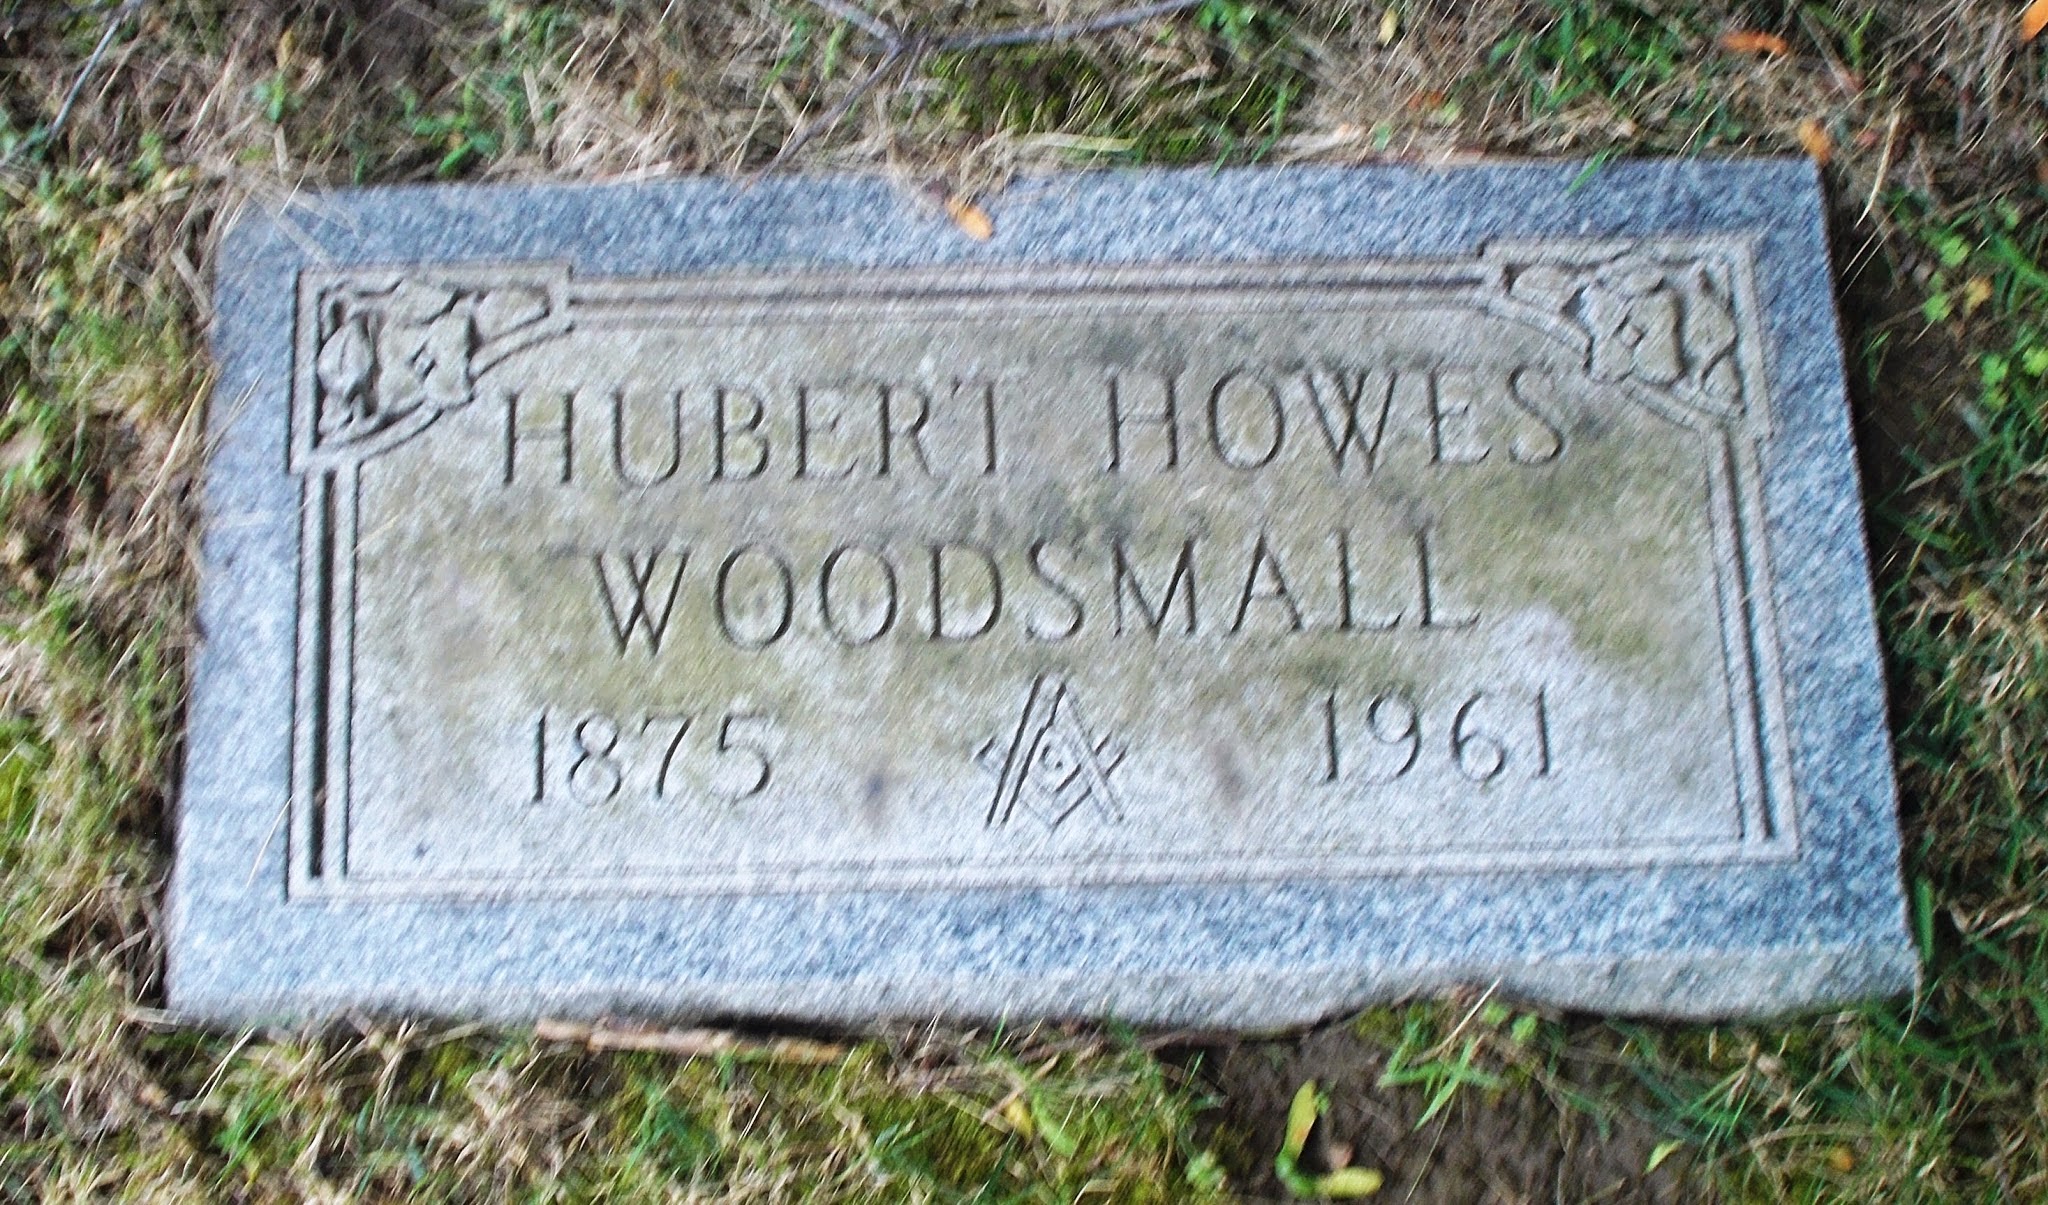 Hubert Howes Woodsmall